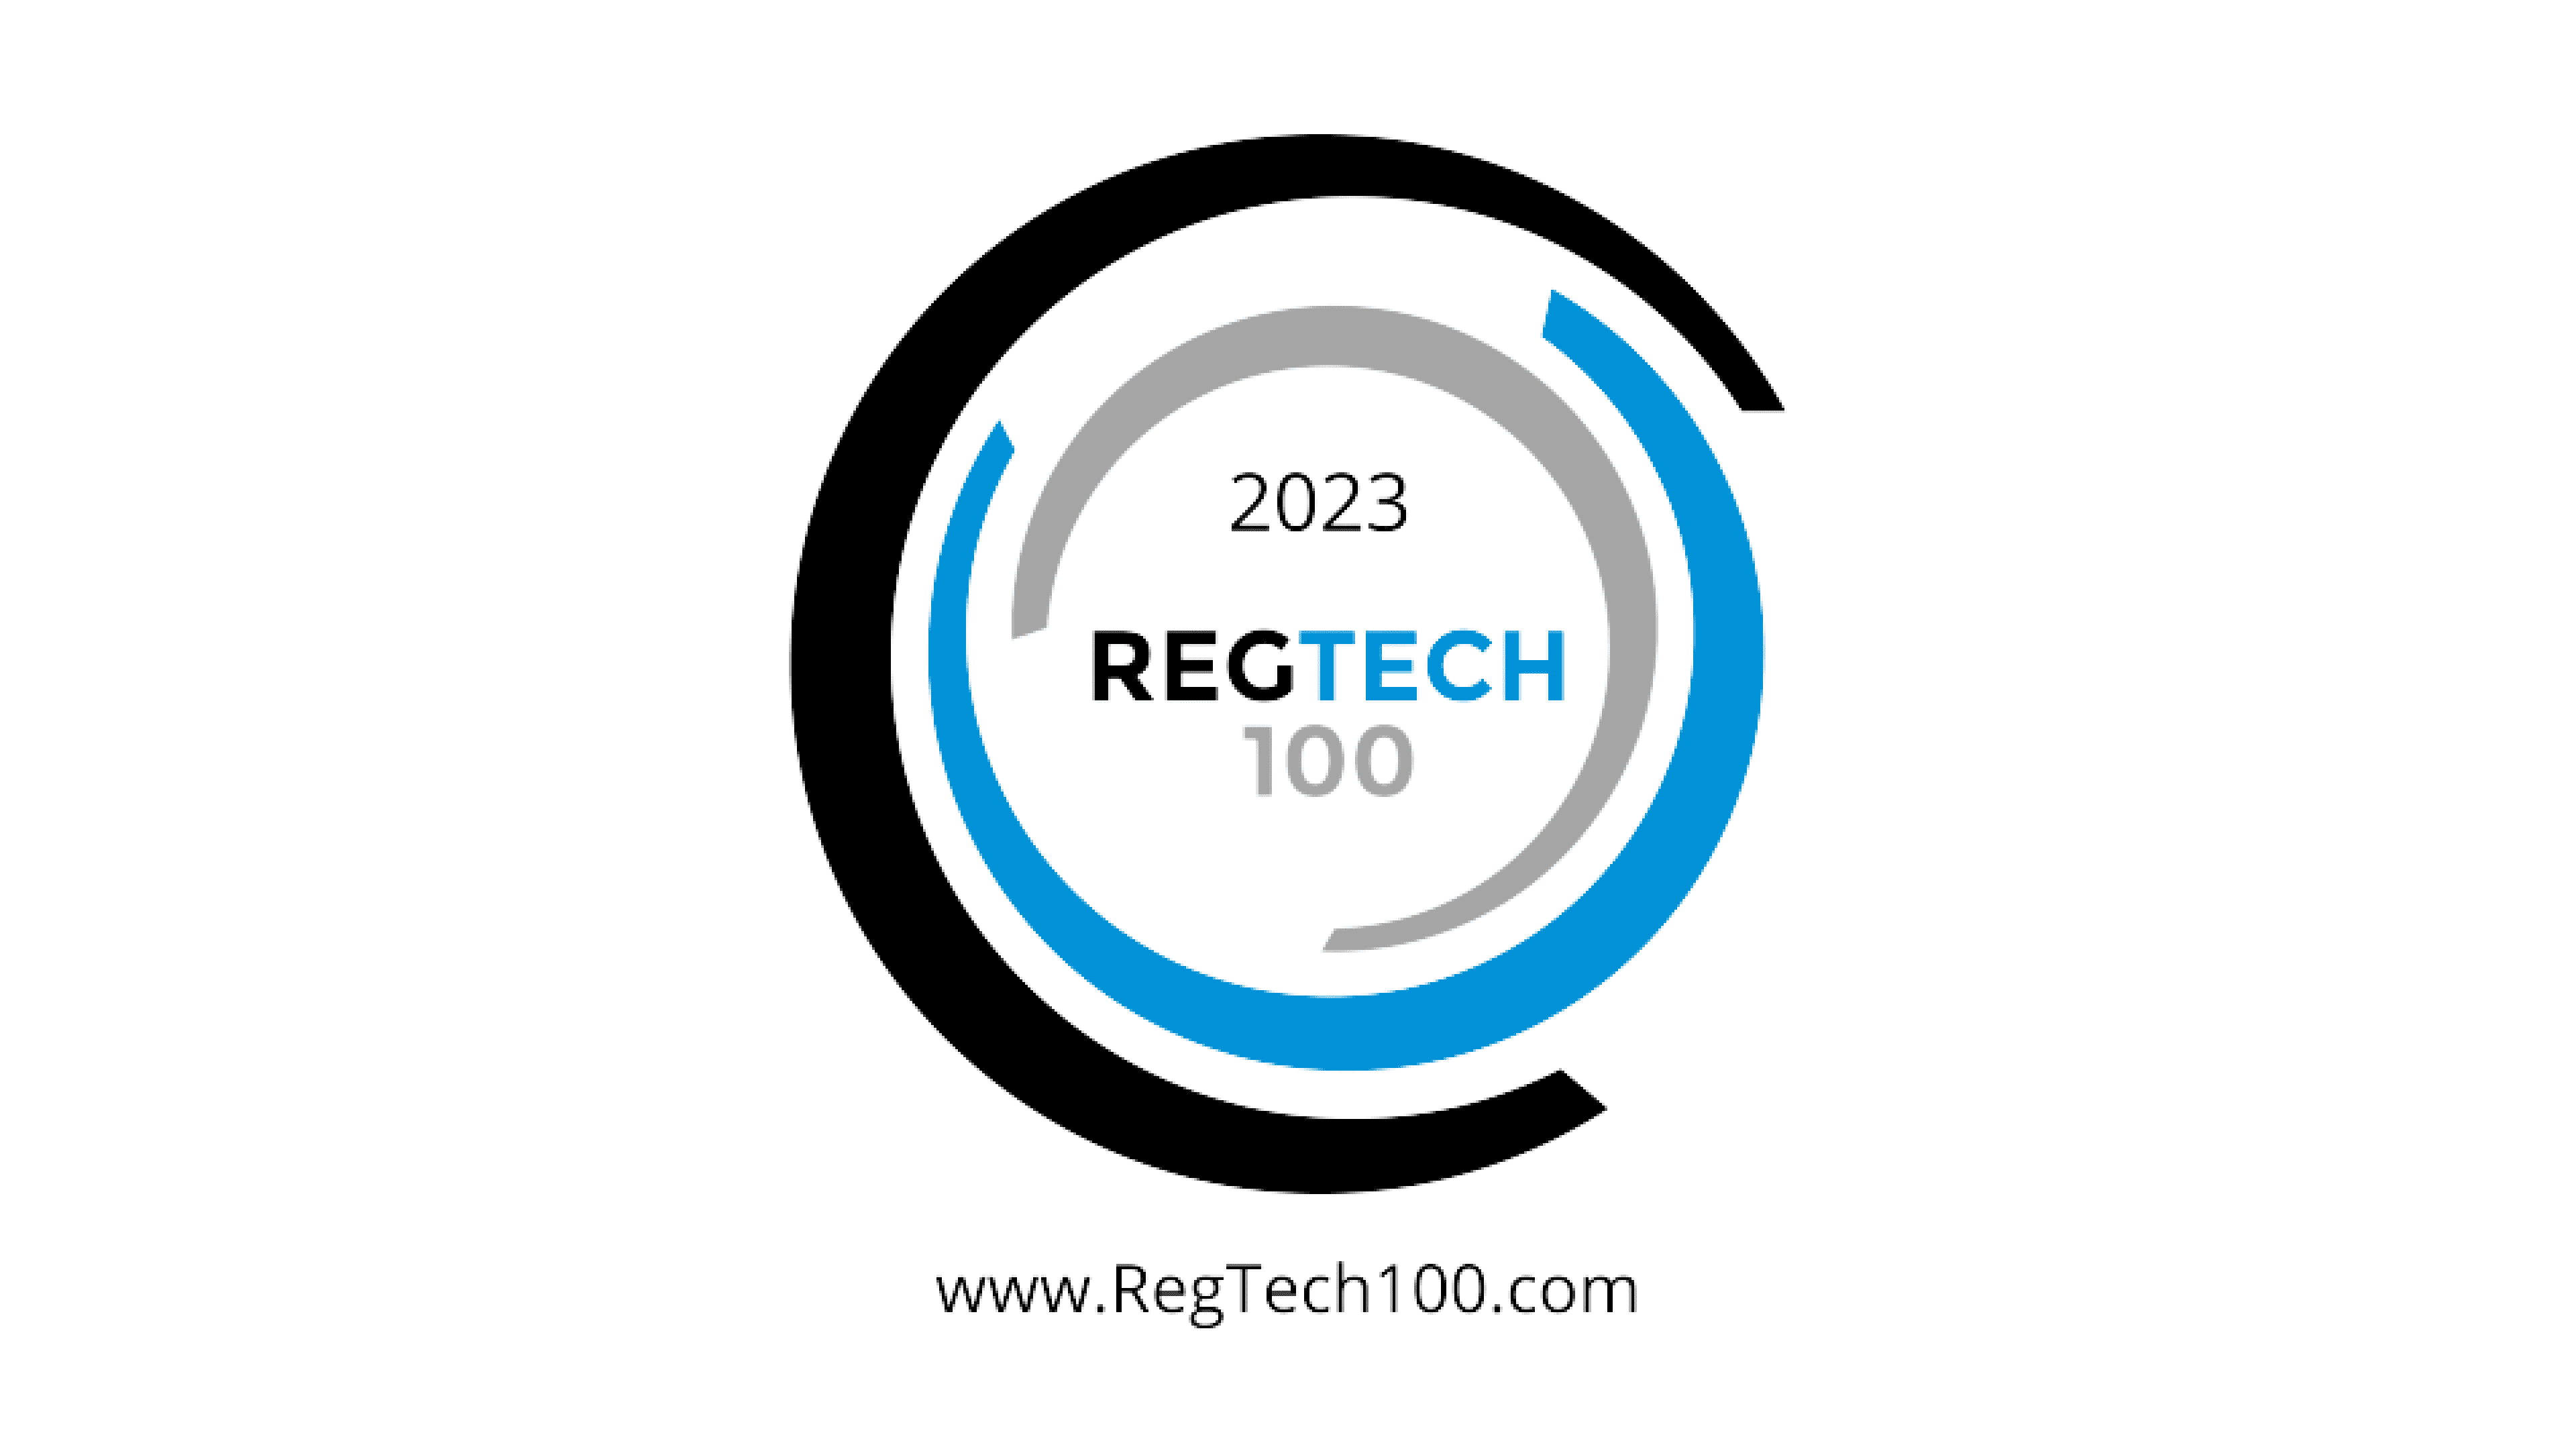 RegTech 100 award 2023